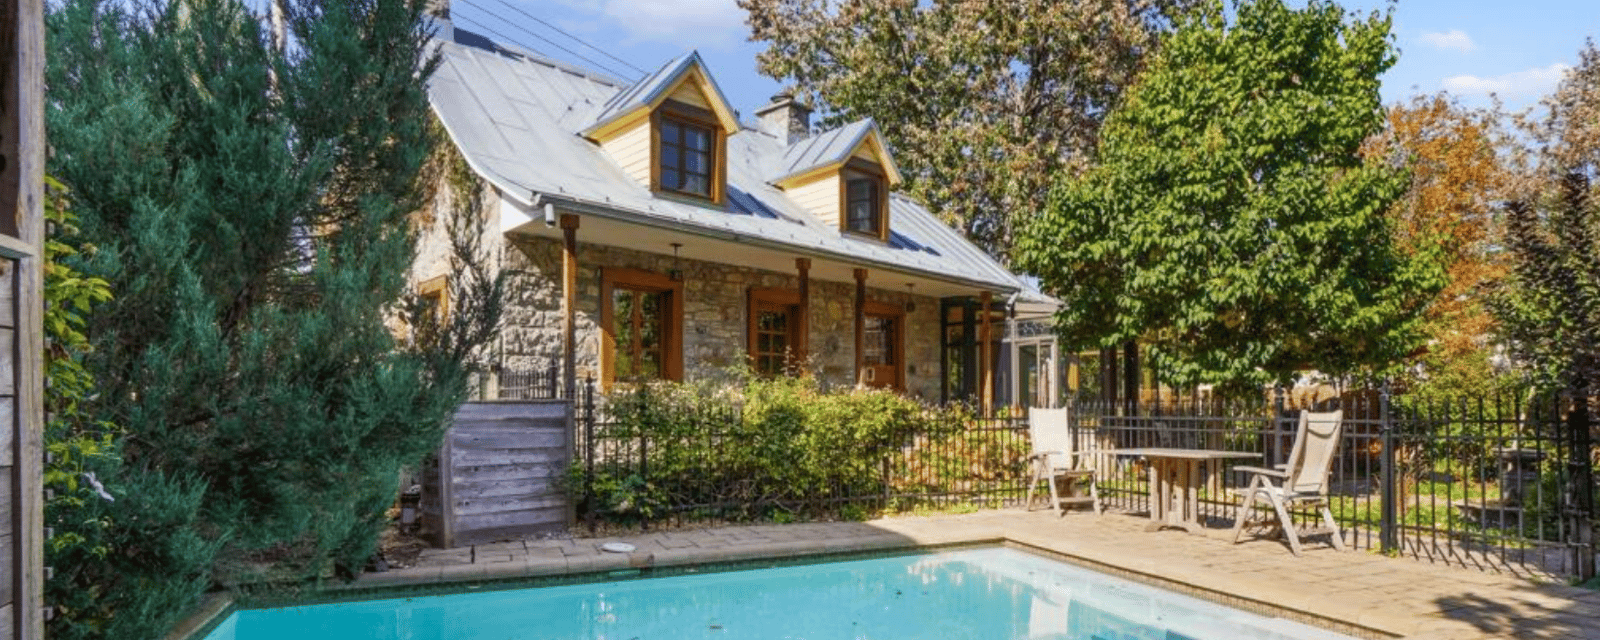 Magnifique maison centenaire à Montréal à vendre à prix raisonnable